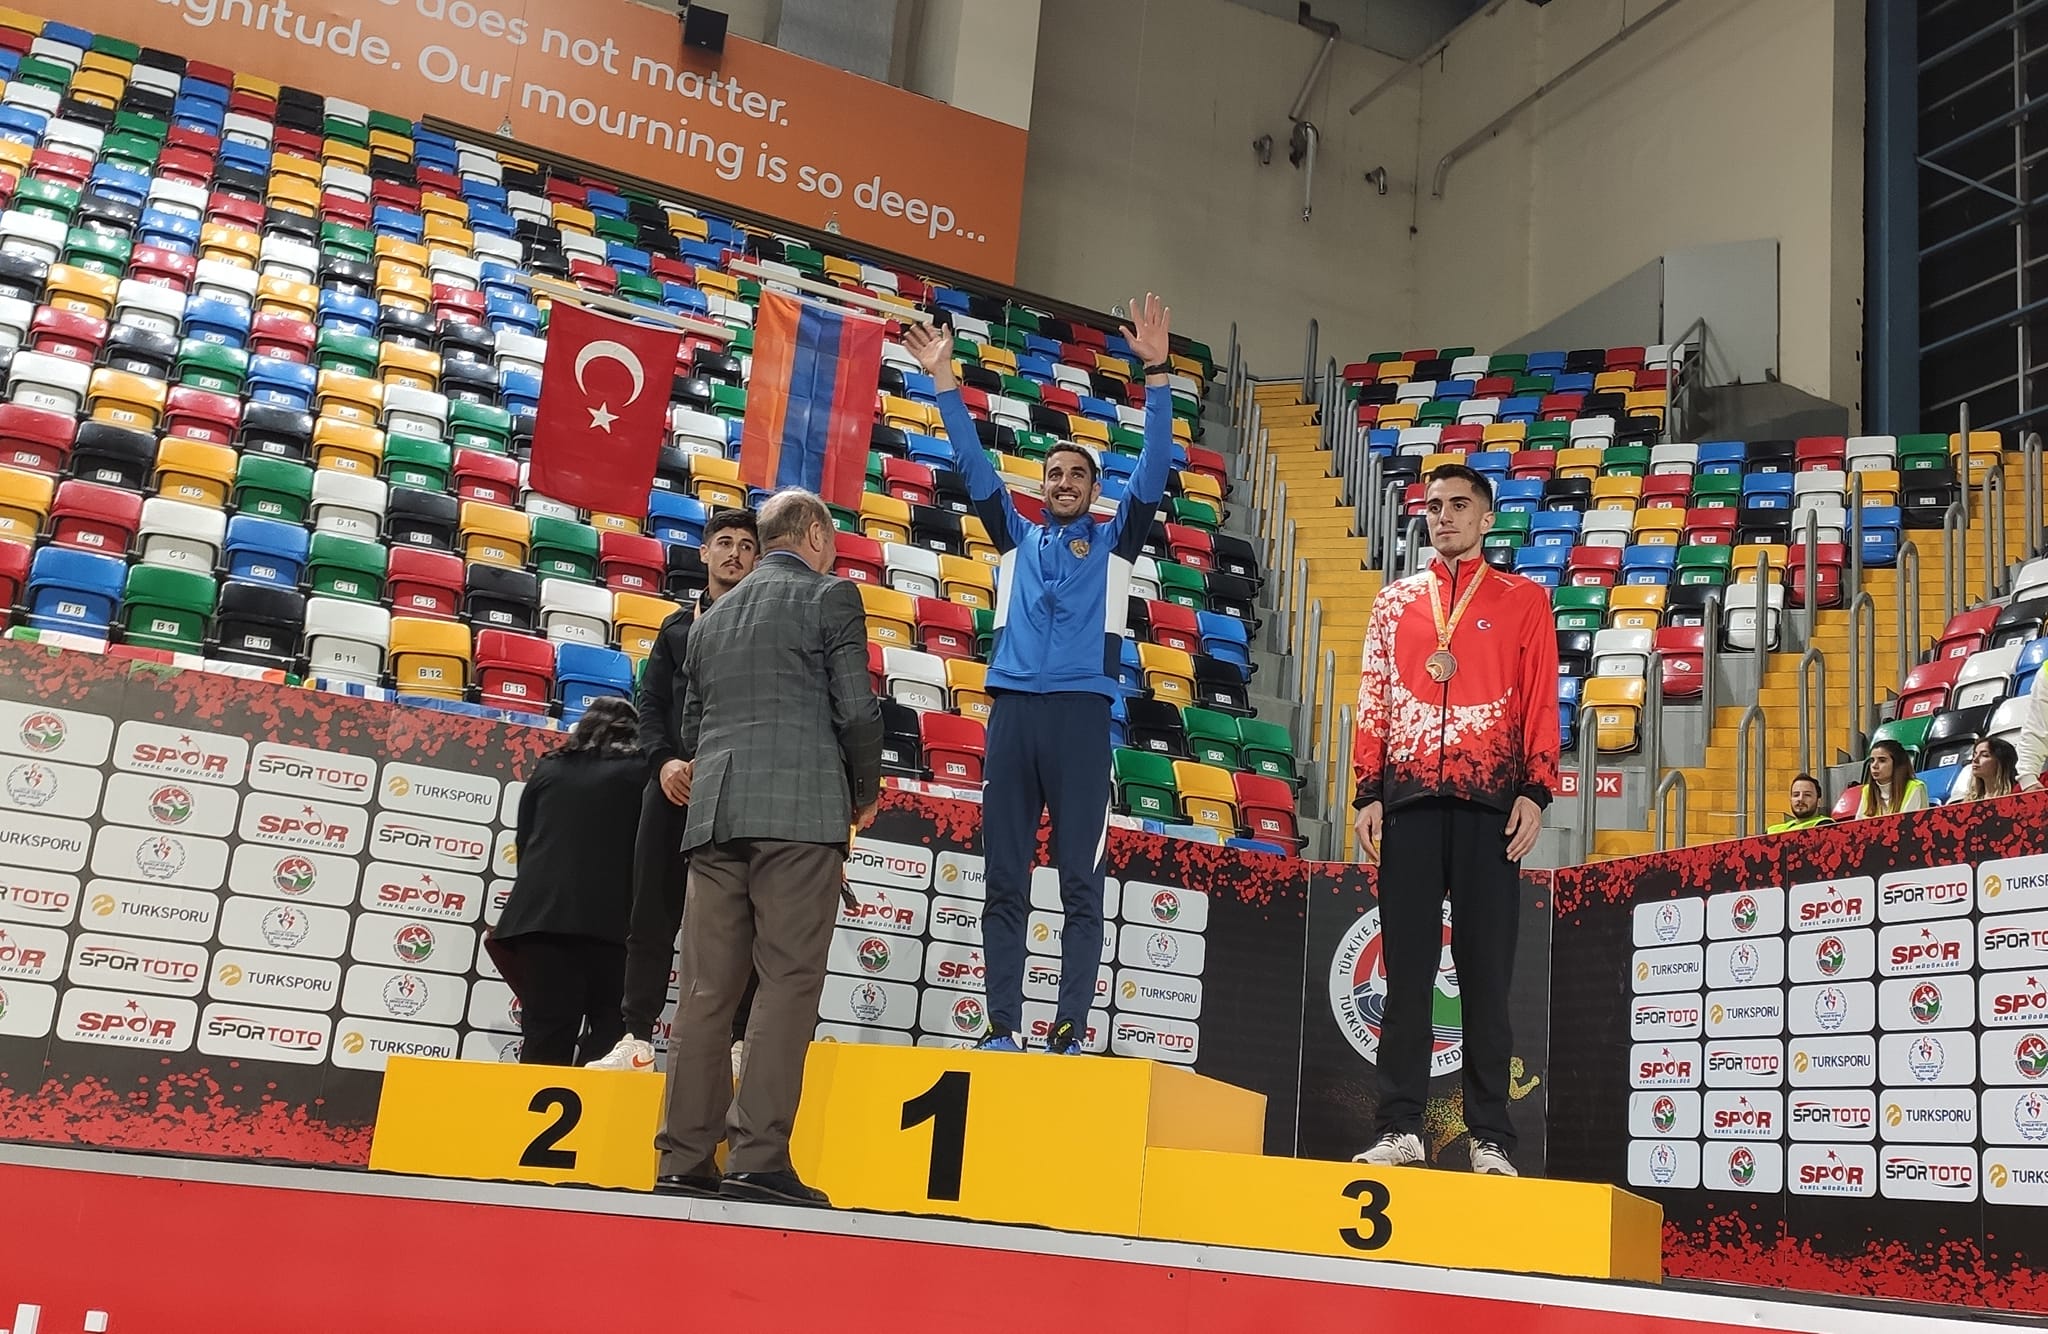 Վազորդ Երվանդ Մկրտչյանը ոսկե մեդալ է նվաճել Ստամբուլում ընթացող Բալկանյան երկրների ձմեռային առաջնությունում